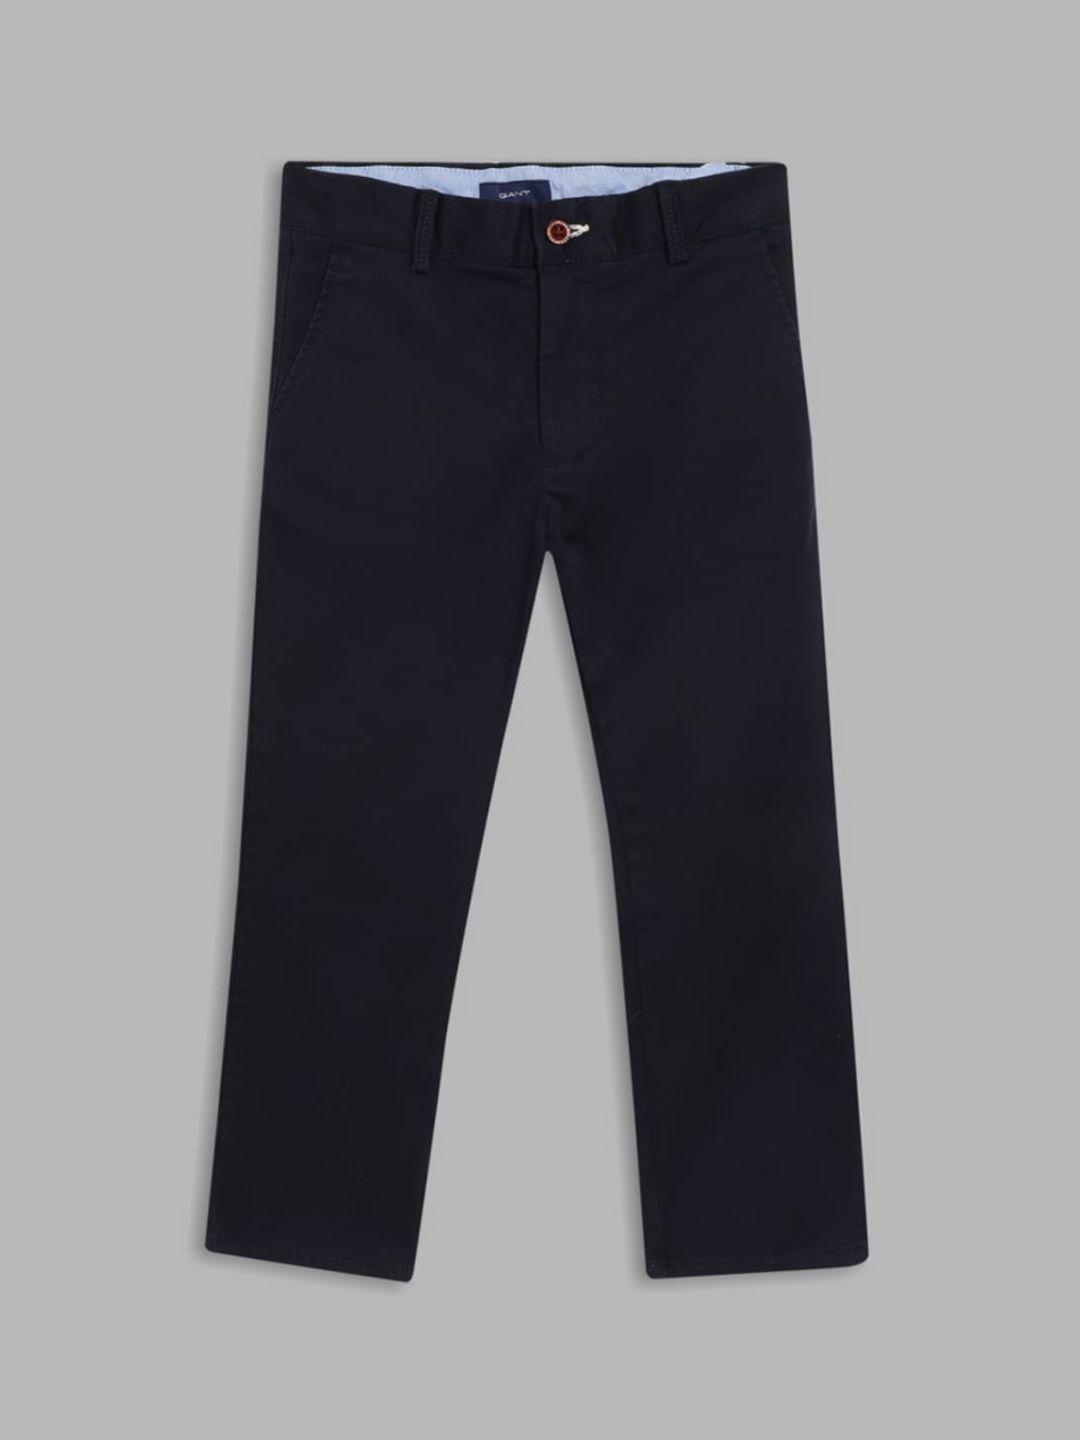 gant-boys-khaki-chinos-cotton-trousers